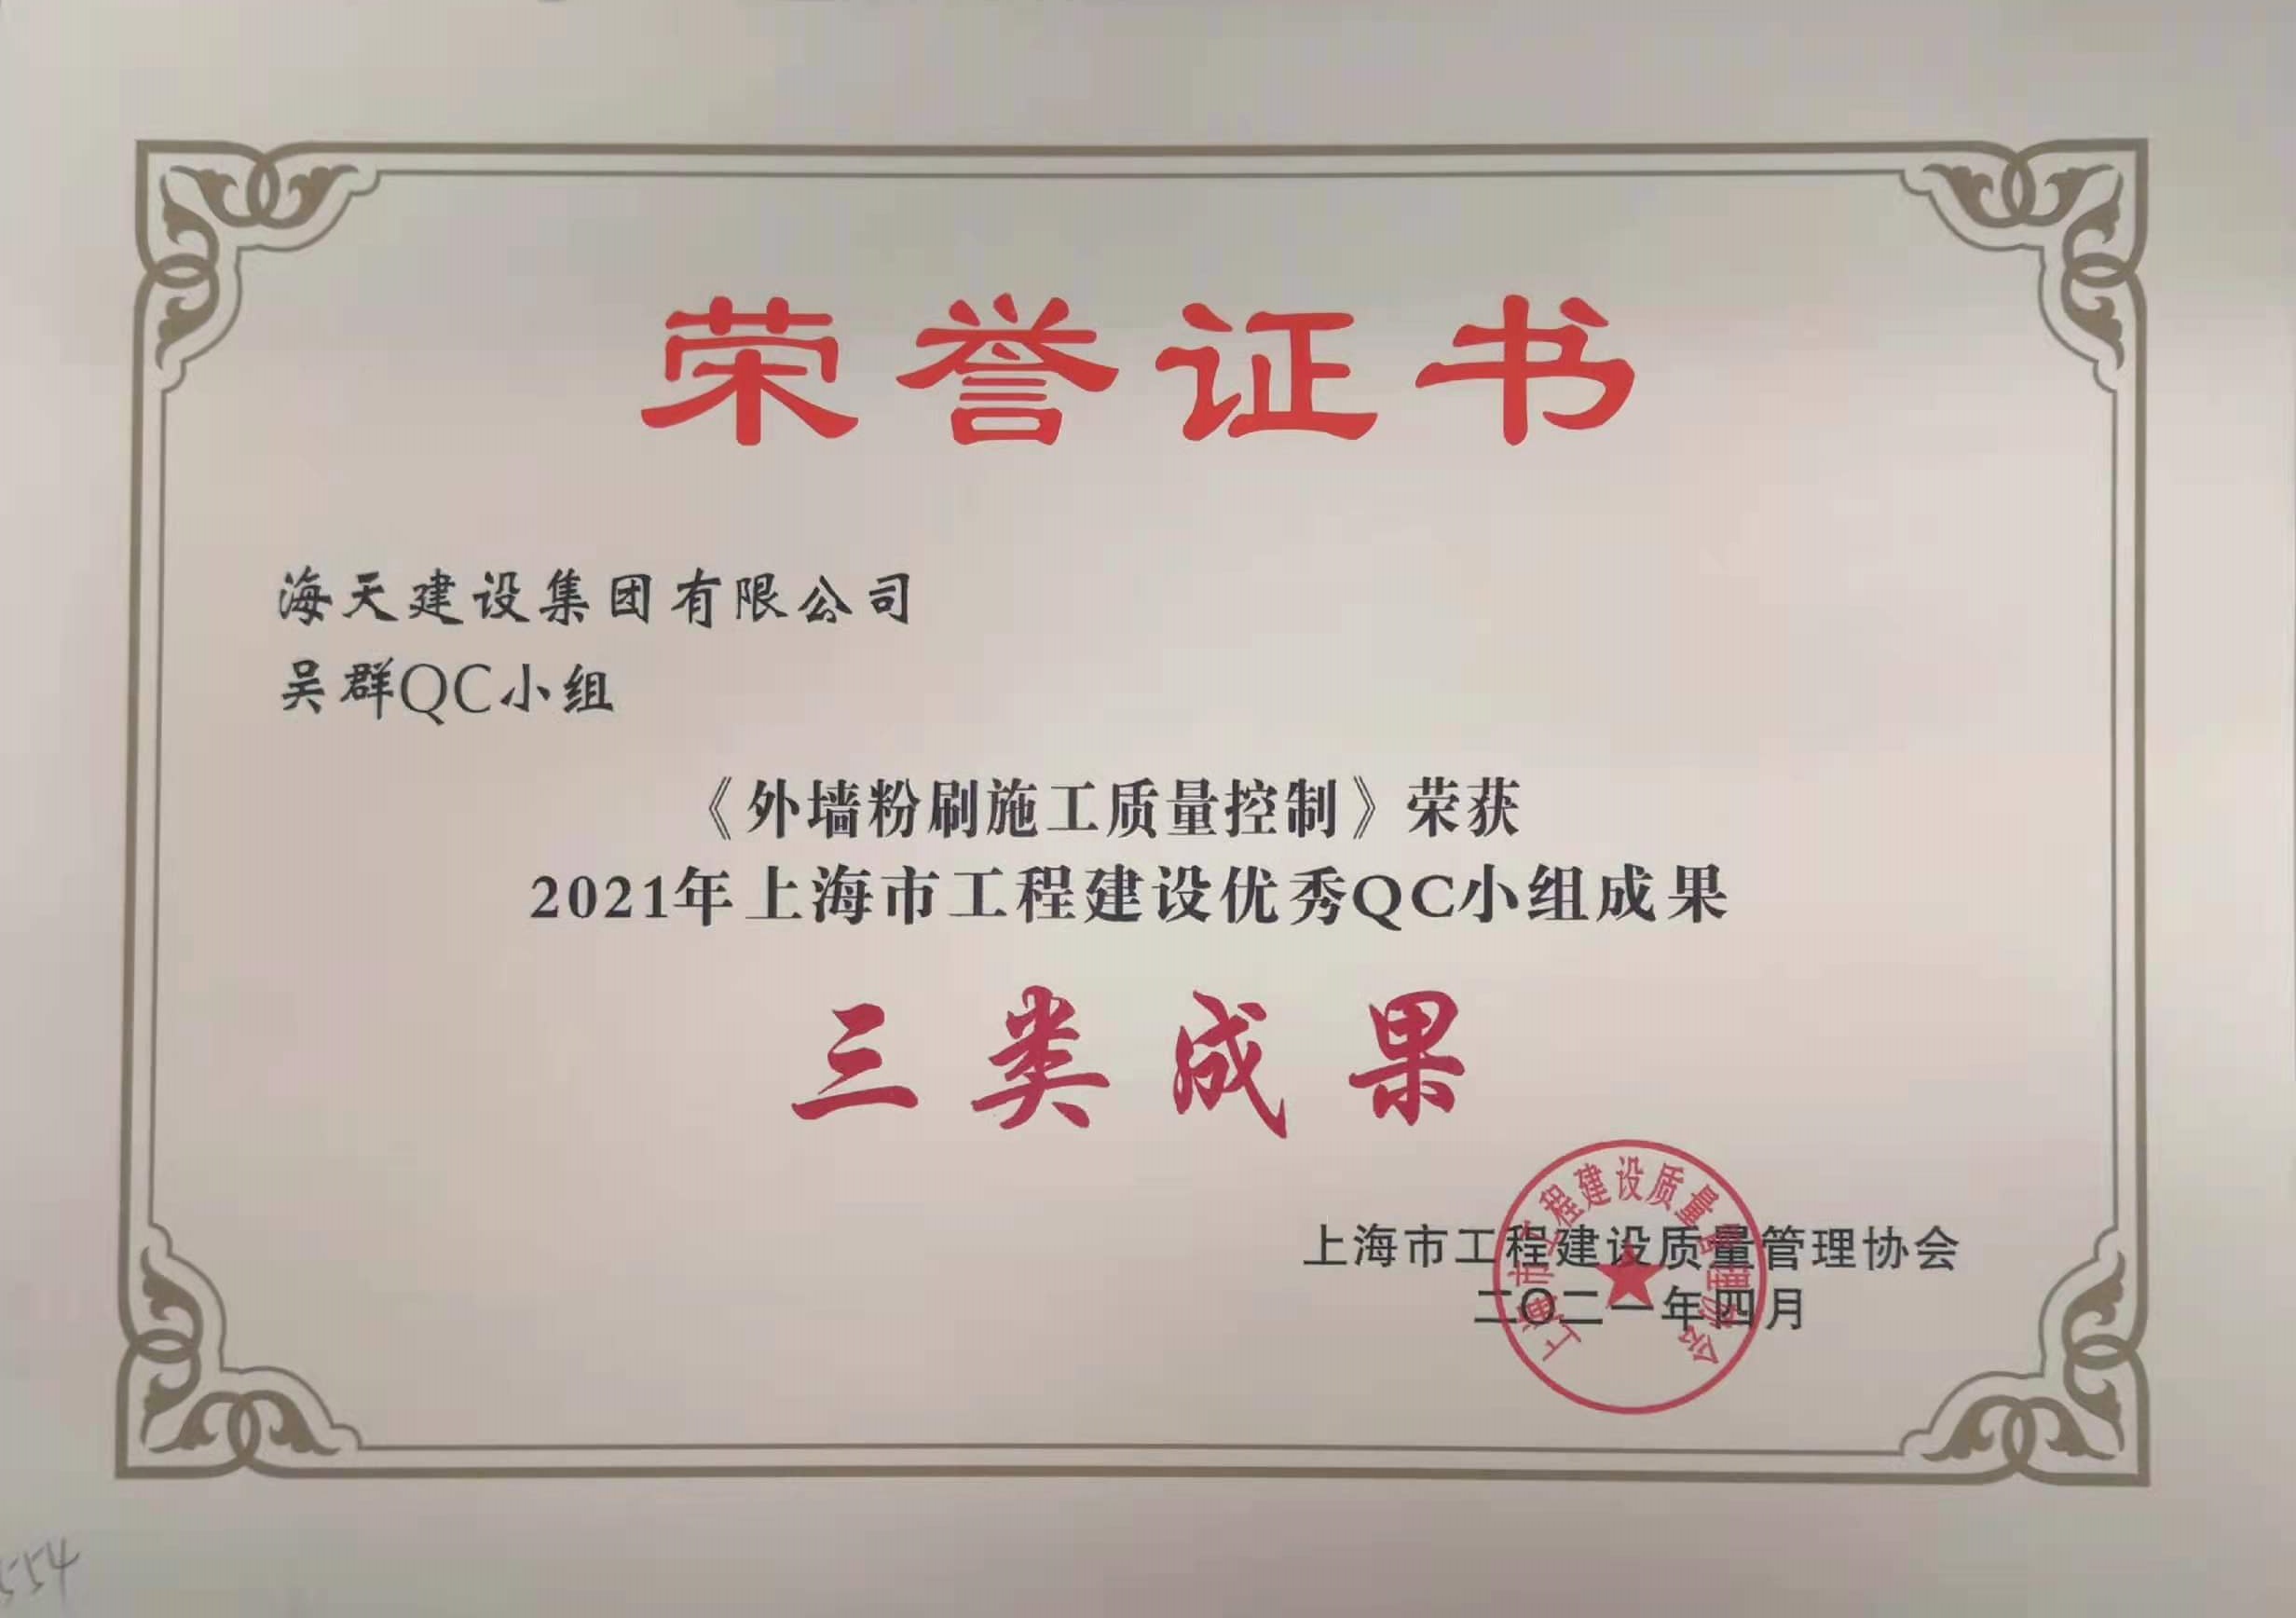 吴群QC小组的《外墙粉刷施工质量控制》获2021年上海市工程建设优秀QC小组三类成果奖